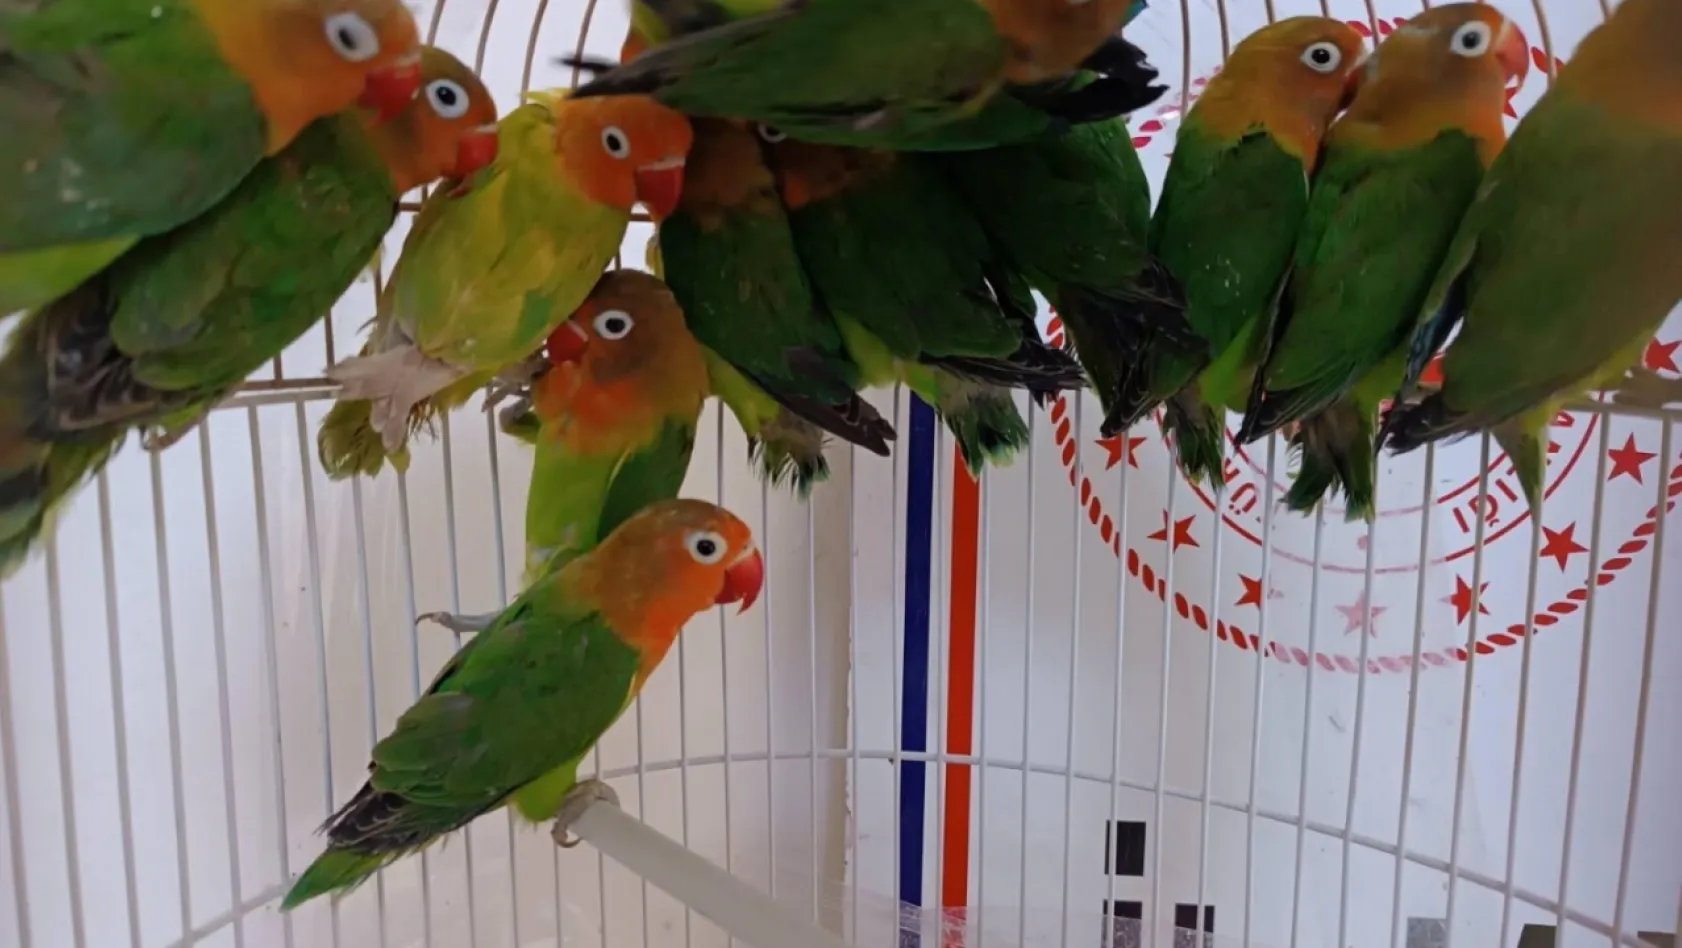 Manisa'da satışı yasak papağan ele geçirildi